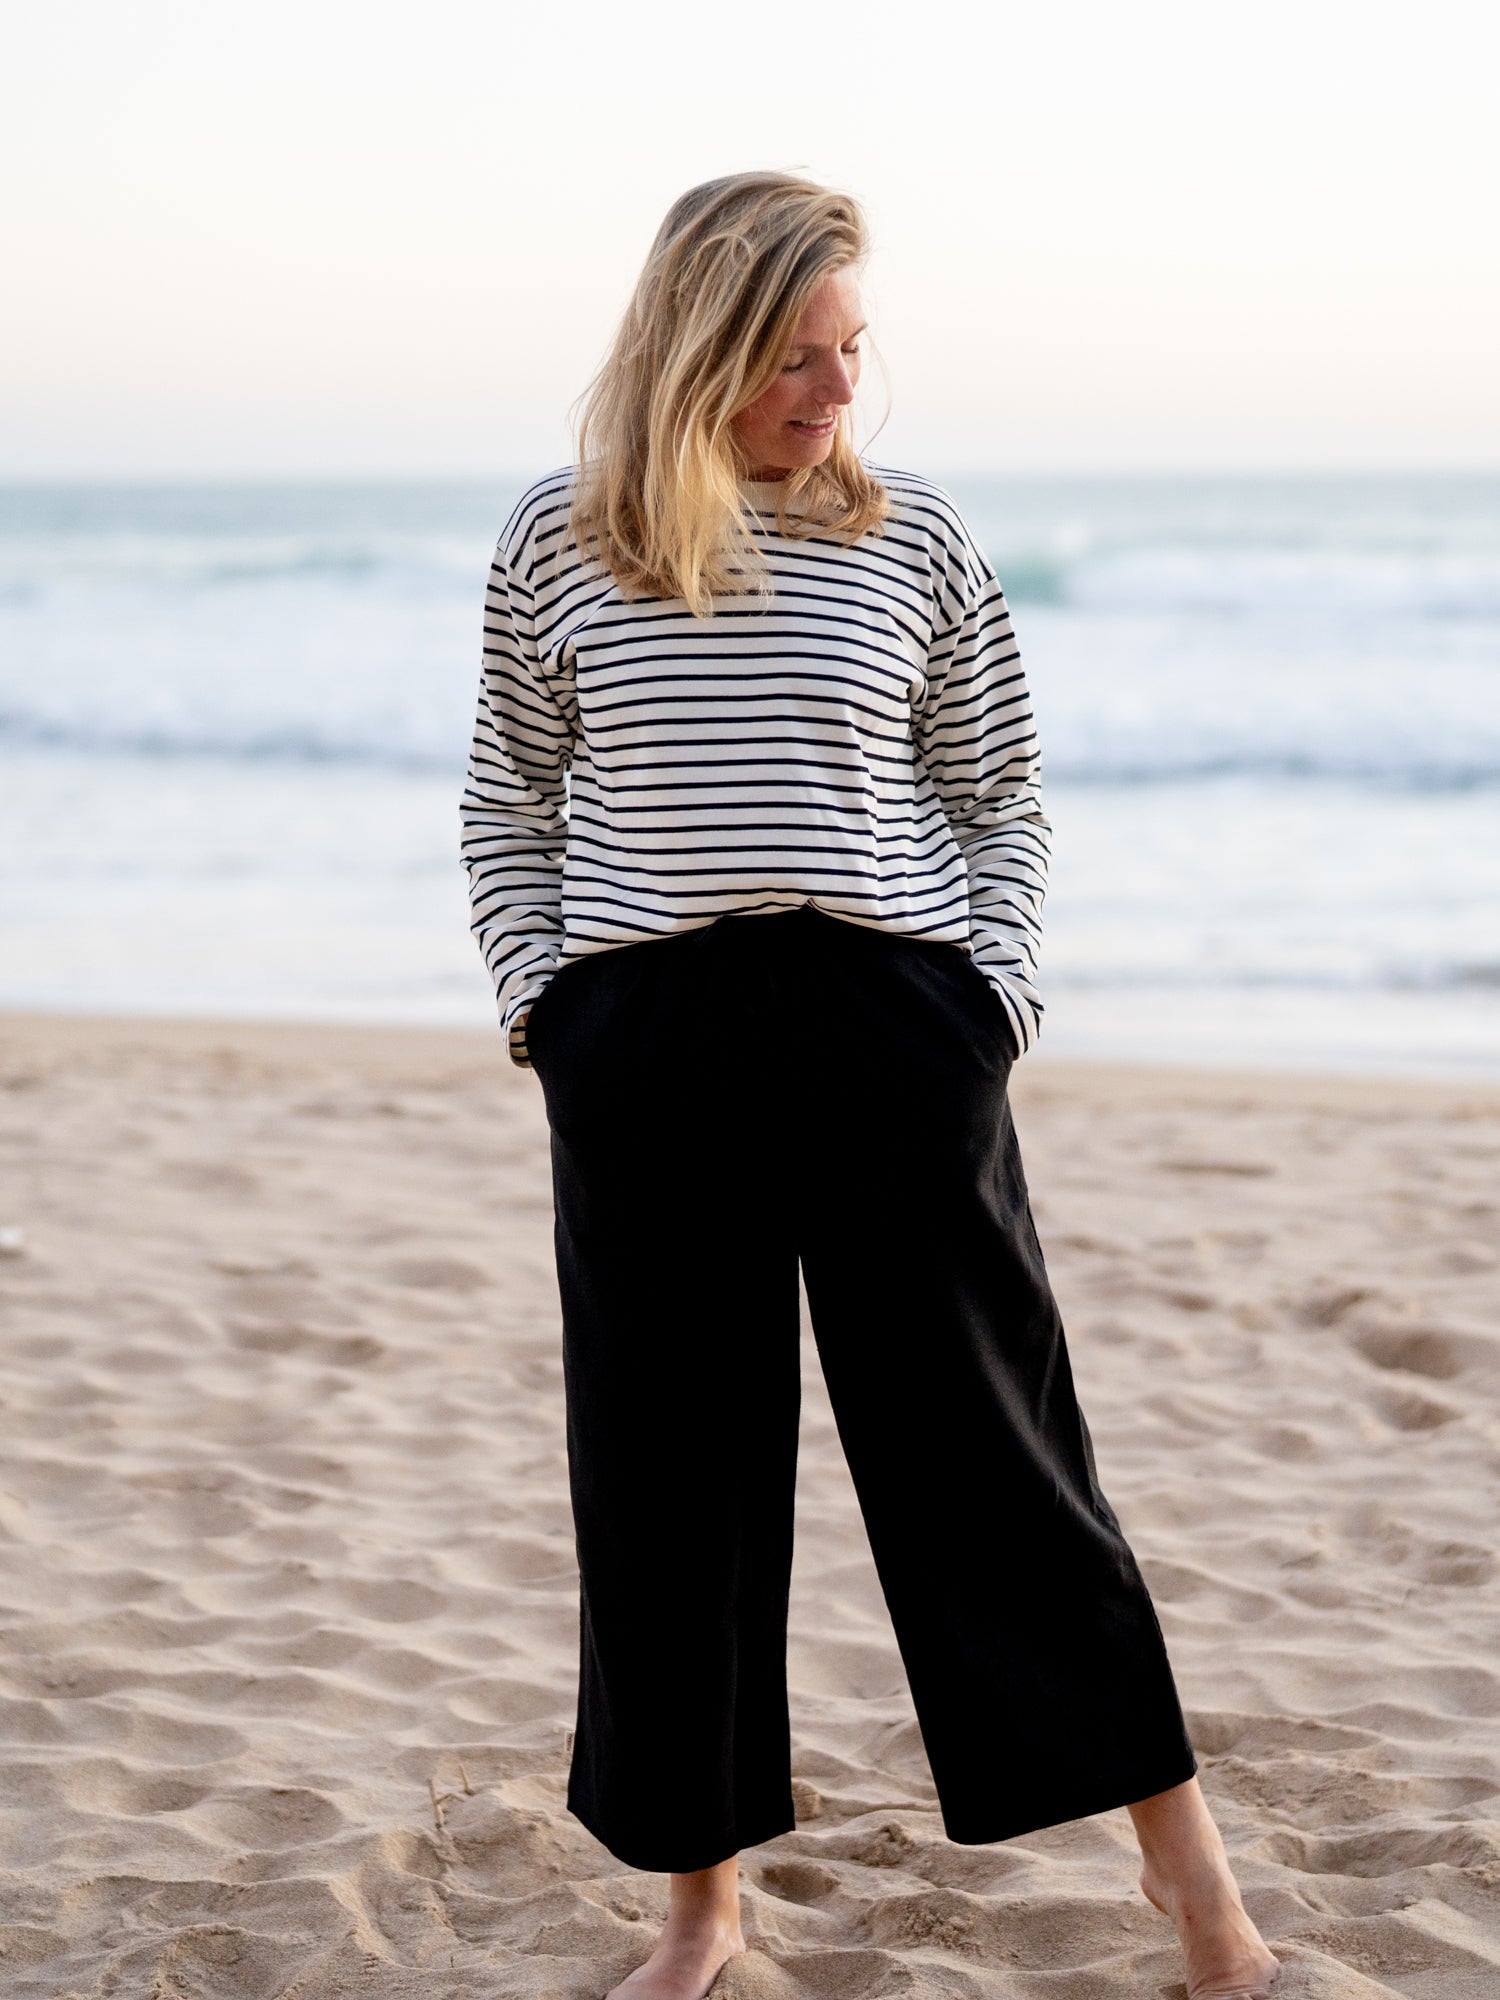 Nachhaltige FUXBAU Fair Fashion Frauen Leinehose in schwarz aus 100% Leinen getragen am Strand in Spanien.